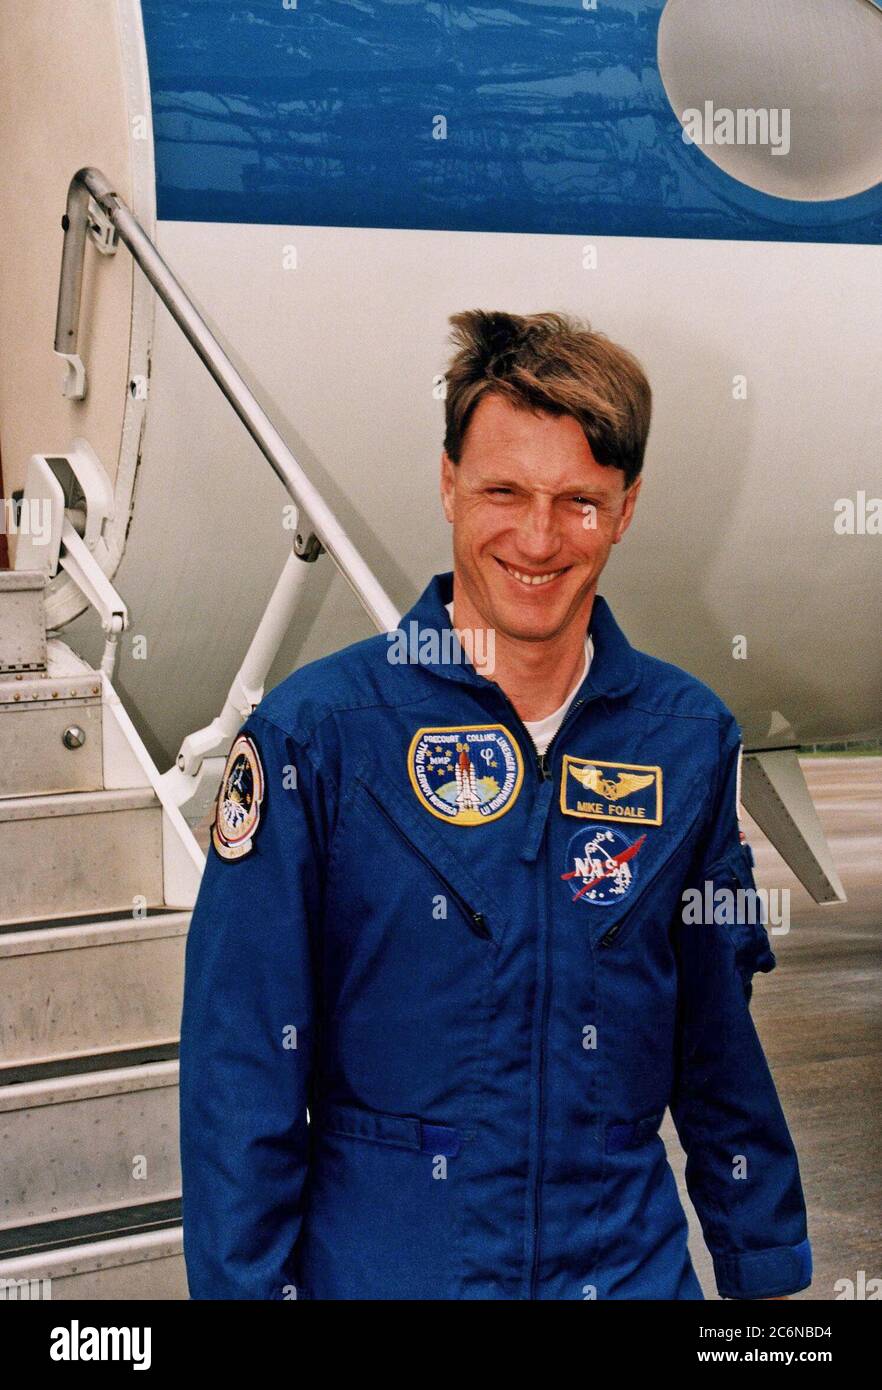 Le spécialiste de mission STS-84, C. Michael Foale, qui deviendra le cinquième astronaute américain à vivre et à travailler sur la Station spatiale russe Mir, arrive à l’installation d’atterrissage de la navette de KSC pour le test de démonstration du compte à rebours du terminal STS-84 (TCDT), une répétition habillée pour le lancement. Foale sera déposé sur Mir lorsque la navette spatiale Atlantis arrira avec Mir le mois prochain. Il deviendra membre de l'équipage Mir 23, en remplacement de l'astronaute américain Jerry M. Linenger, qui retournera sur Terre sur Atlantis après environ quatre mois sur la station en orbite. STS-84 sera la sixième station d'accueil Shuttle-Mir. Le décollage est ciblé Banque D'Images